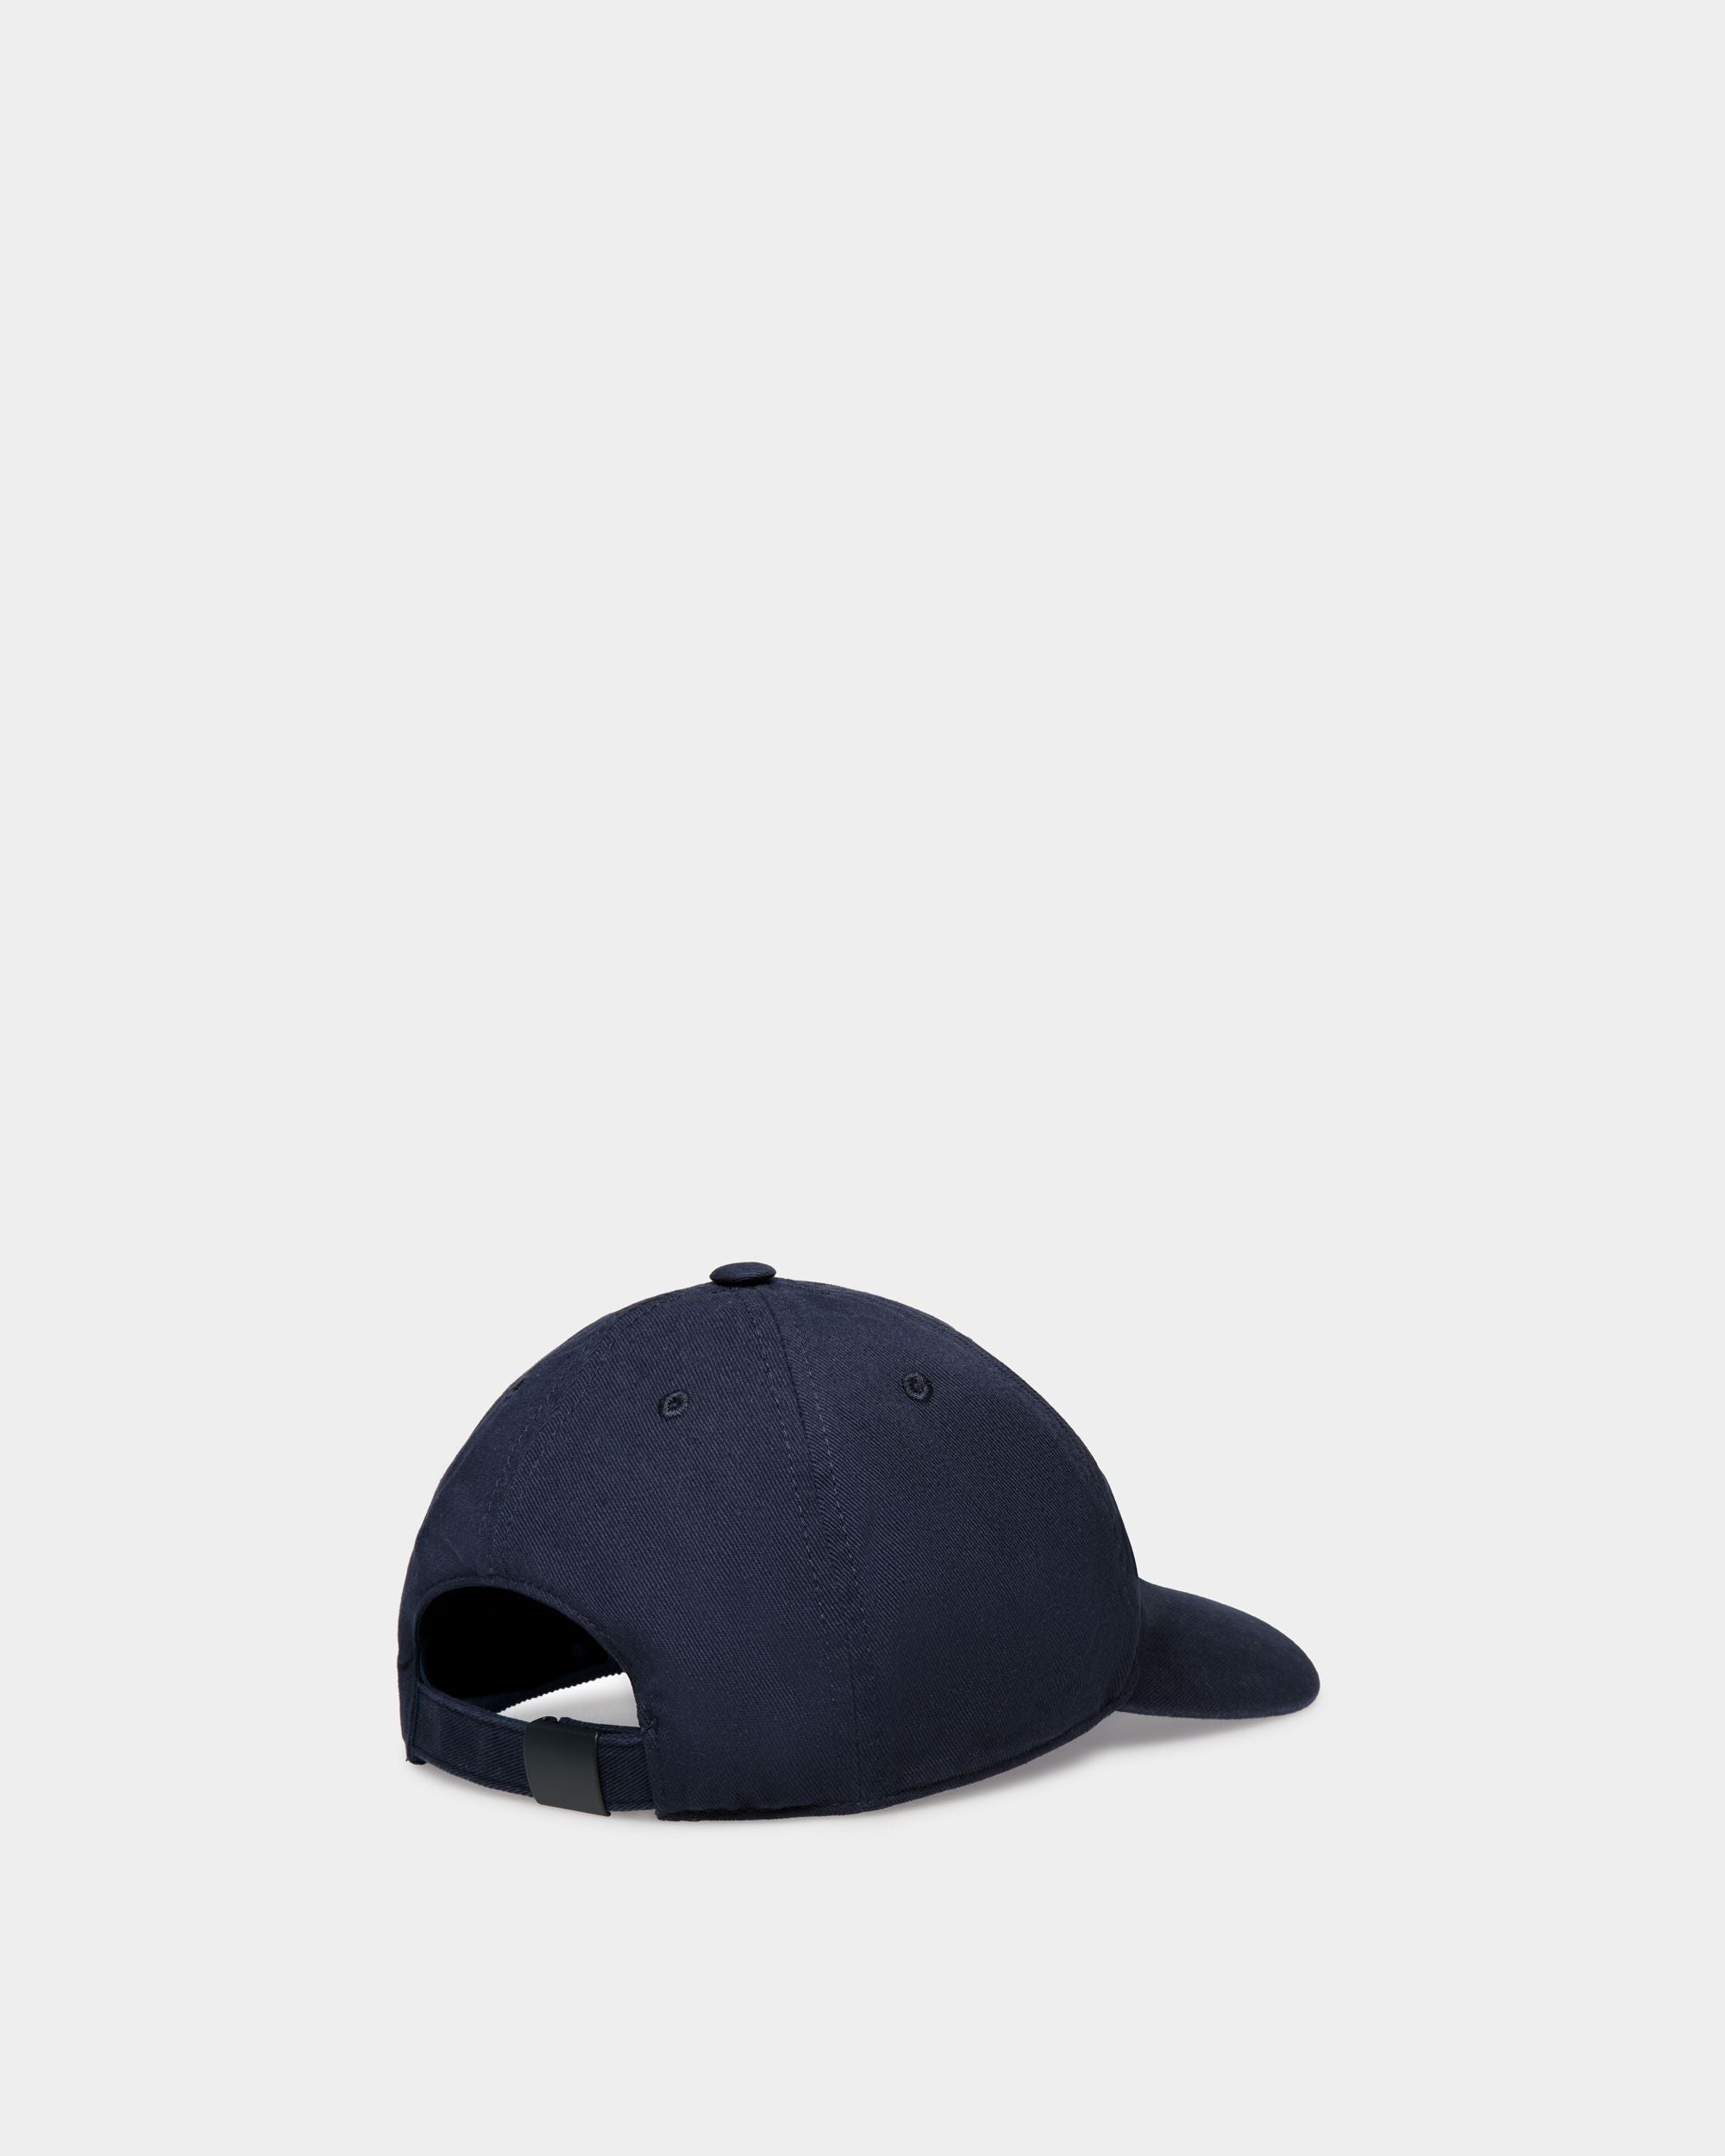 Men's Baseball Hat in Navy Blue Cotton | Bally | Still Life 3/4 Back